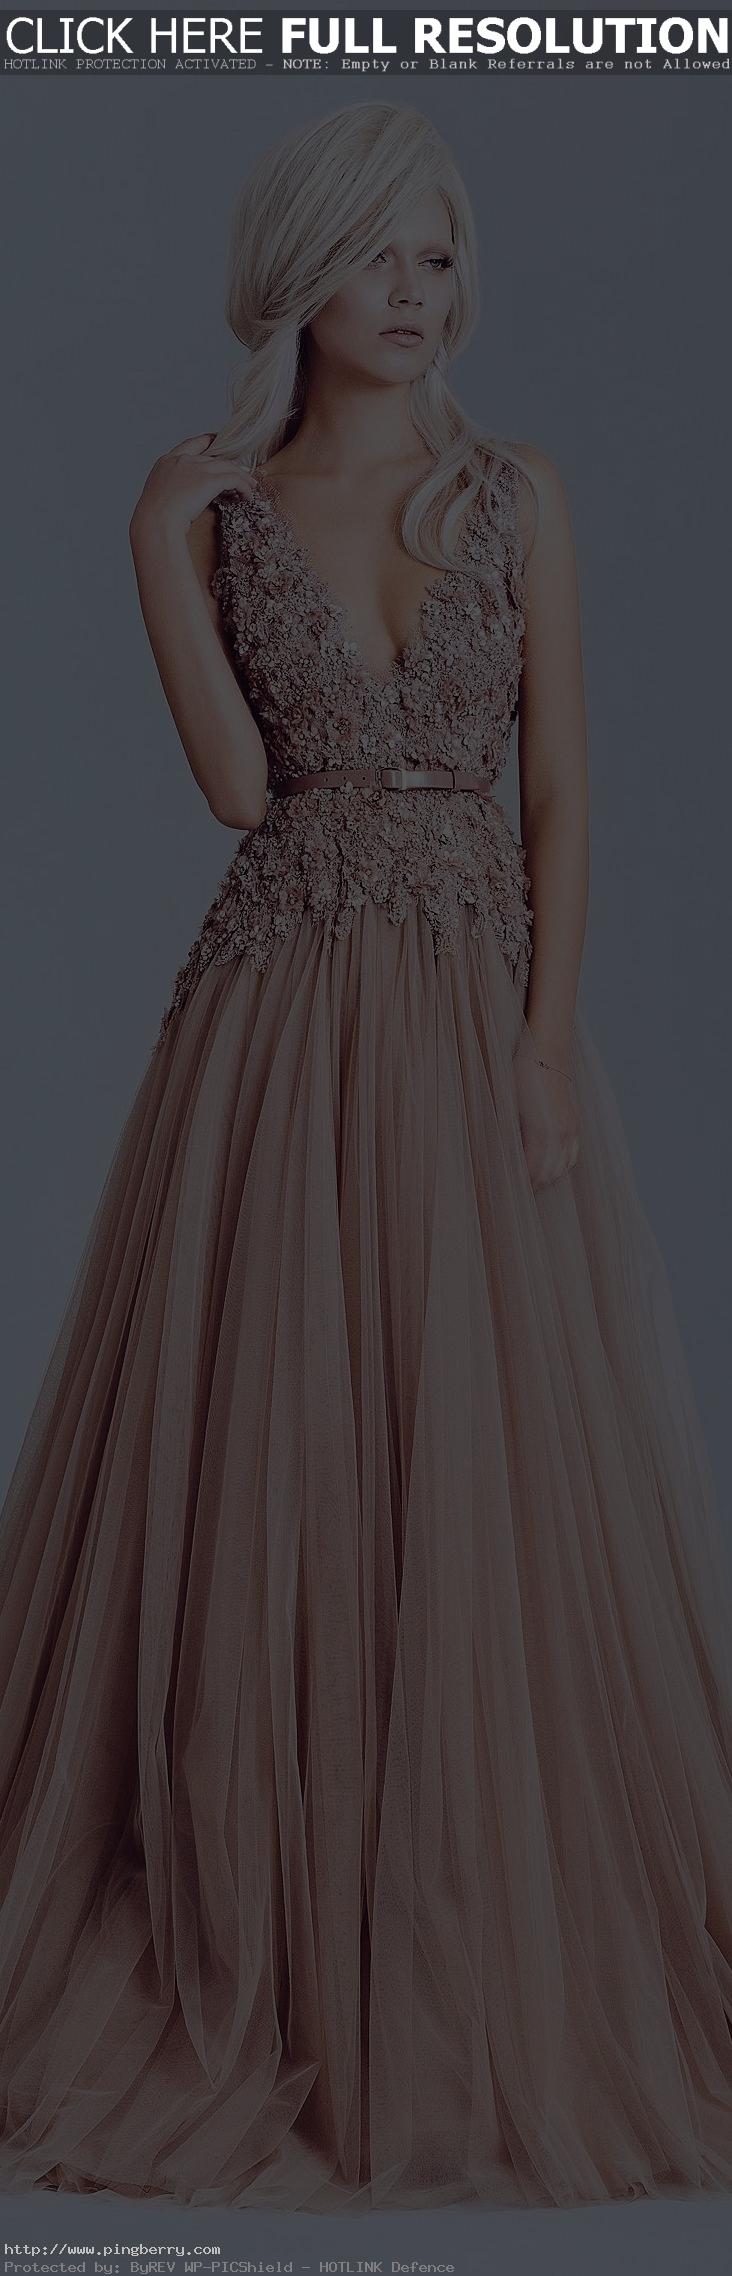 Alfazairy Couture S/S 2015 - Ongelooflik mooi!!!!!! nee nee nee soek dit!!!! loo...